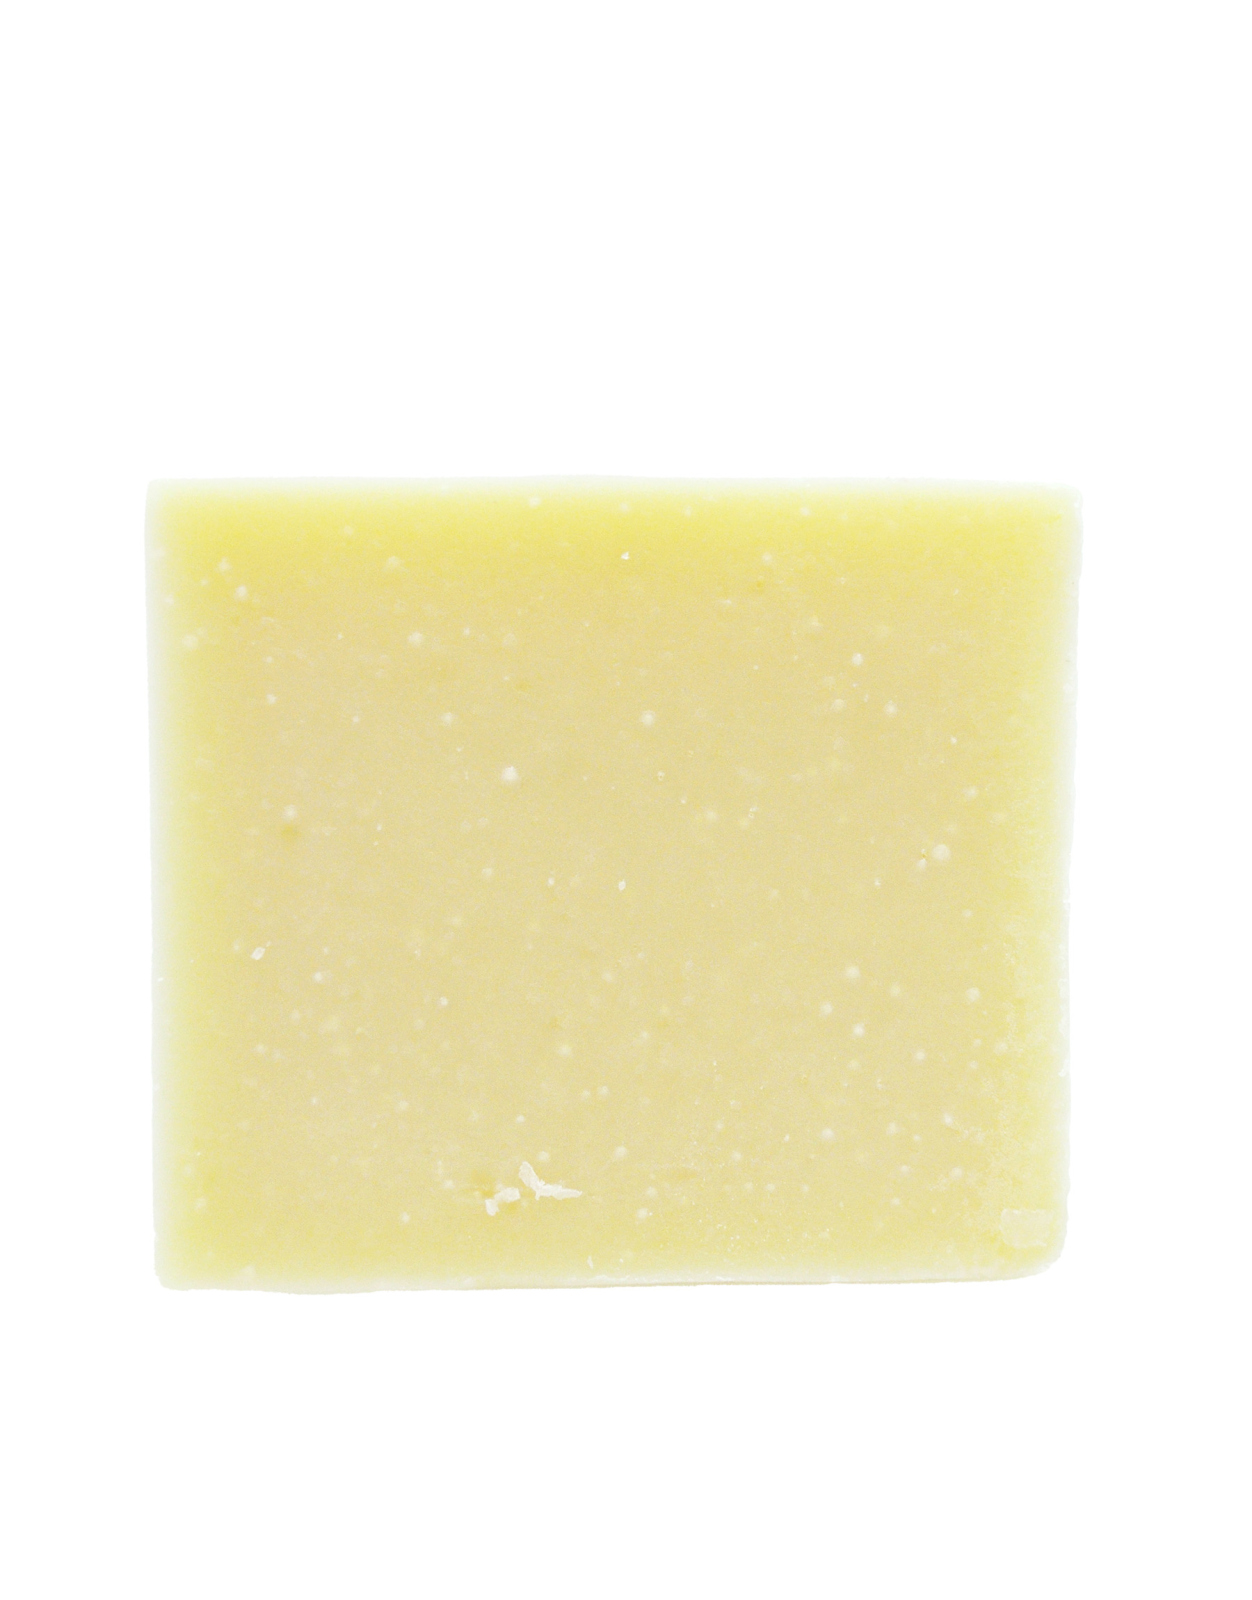 【篠山石鹸/ピュア100】オリーブオイル100%の自然派石鹸。合成界面活性剤・防腐剤・合成着色料・合成香料不使用。赤ちゃんや肌の弱い方に優しい石鹸です。